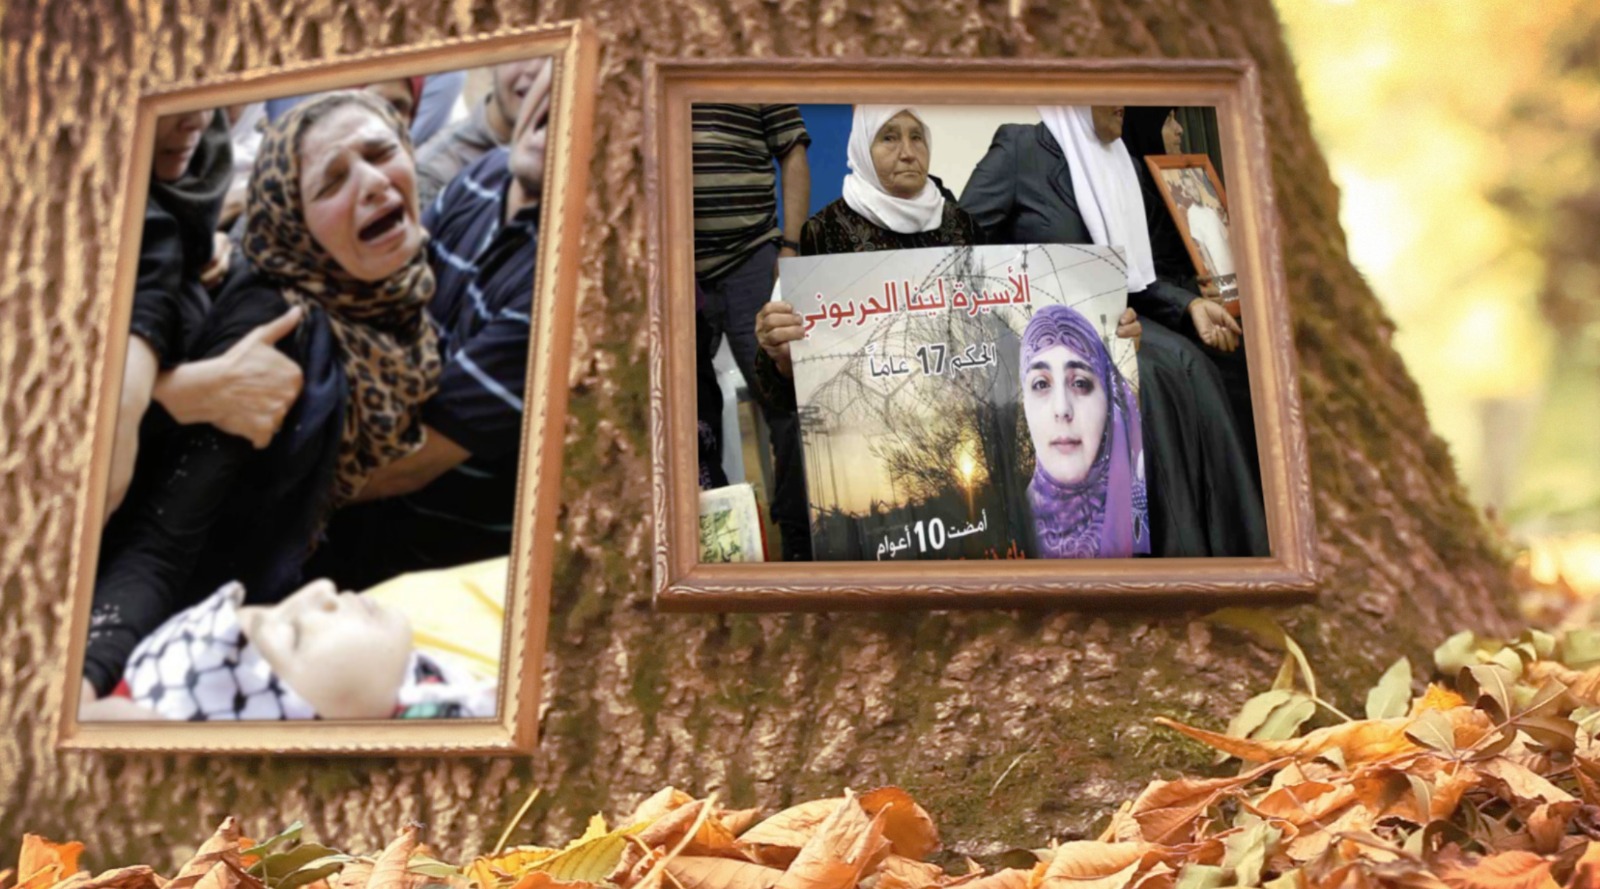 صورة تلفزيون “فلسطيني” يطلق “يامو” تكريماً للأم الفلسطينية والعربية الصابرة